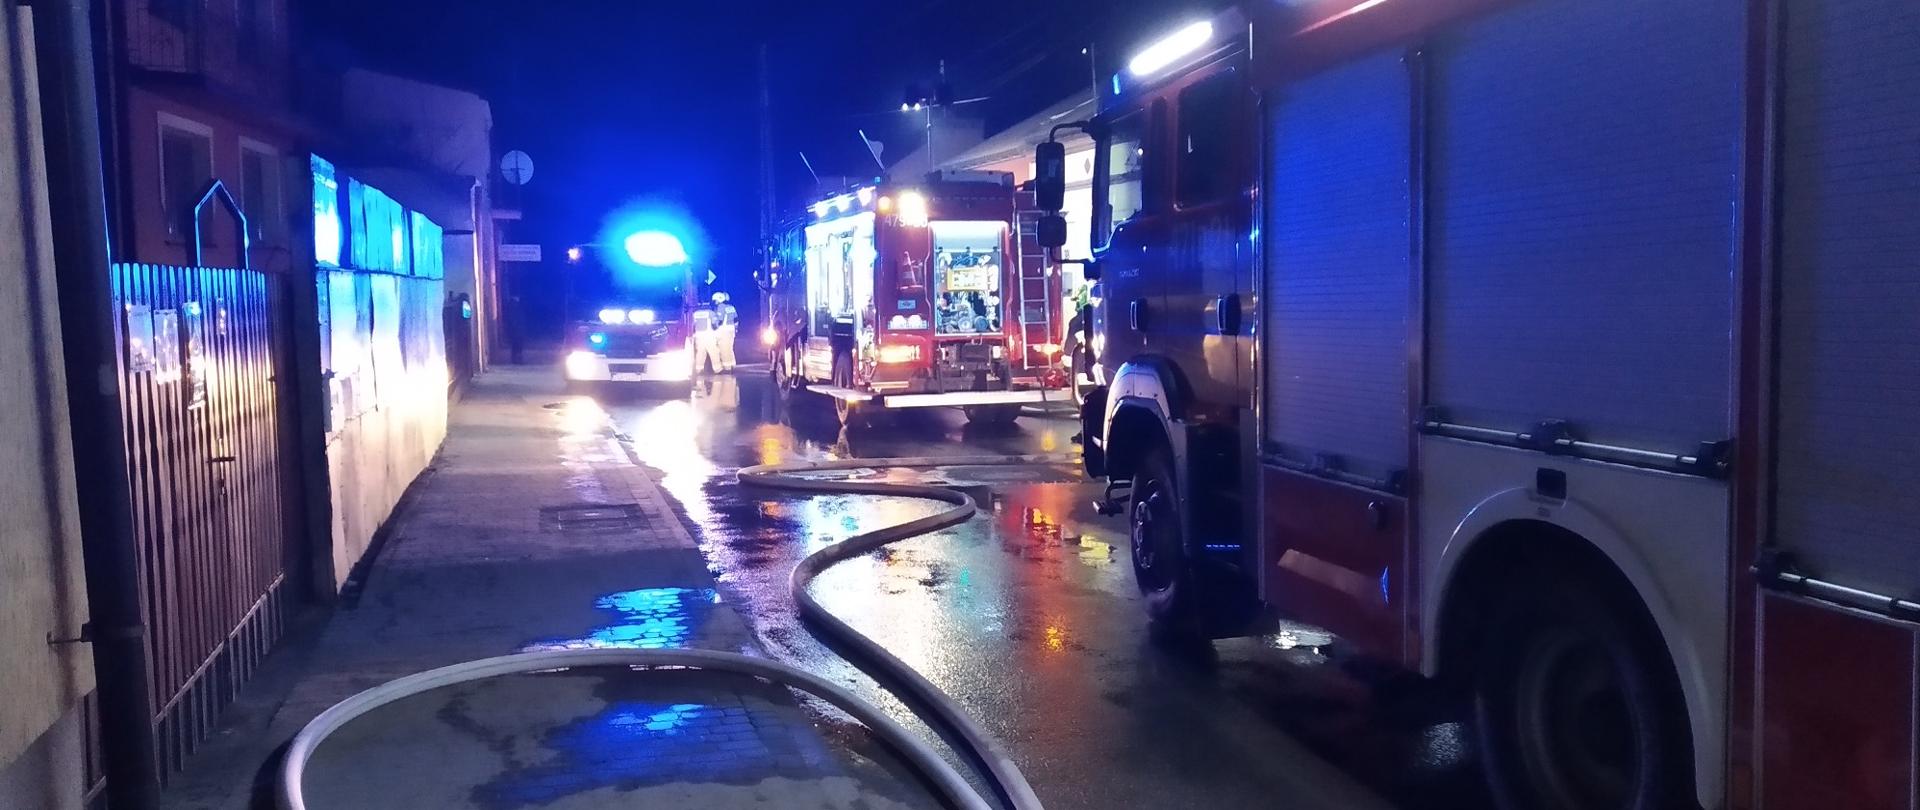 zdjęcie zrobione w nocy. Na ulicy stoją trzy samochody strażackie z włączonymi sygnałami świetlnymi na ziemi rozłożone węże strażackie napełnione wodą. 